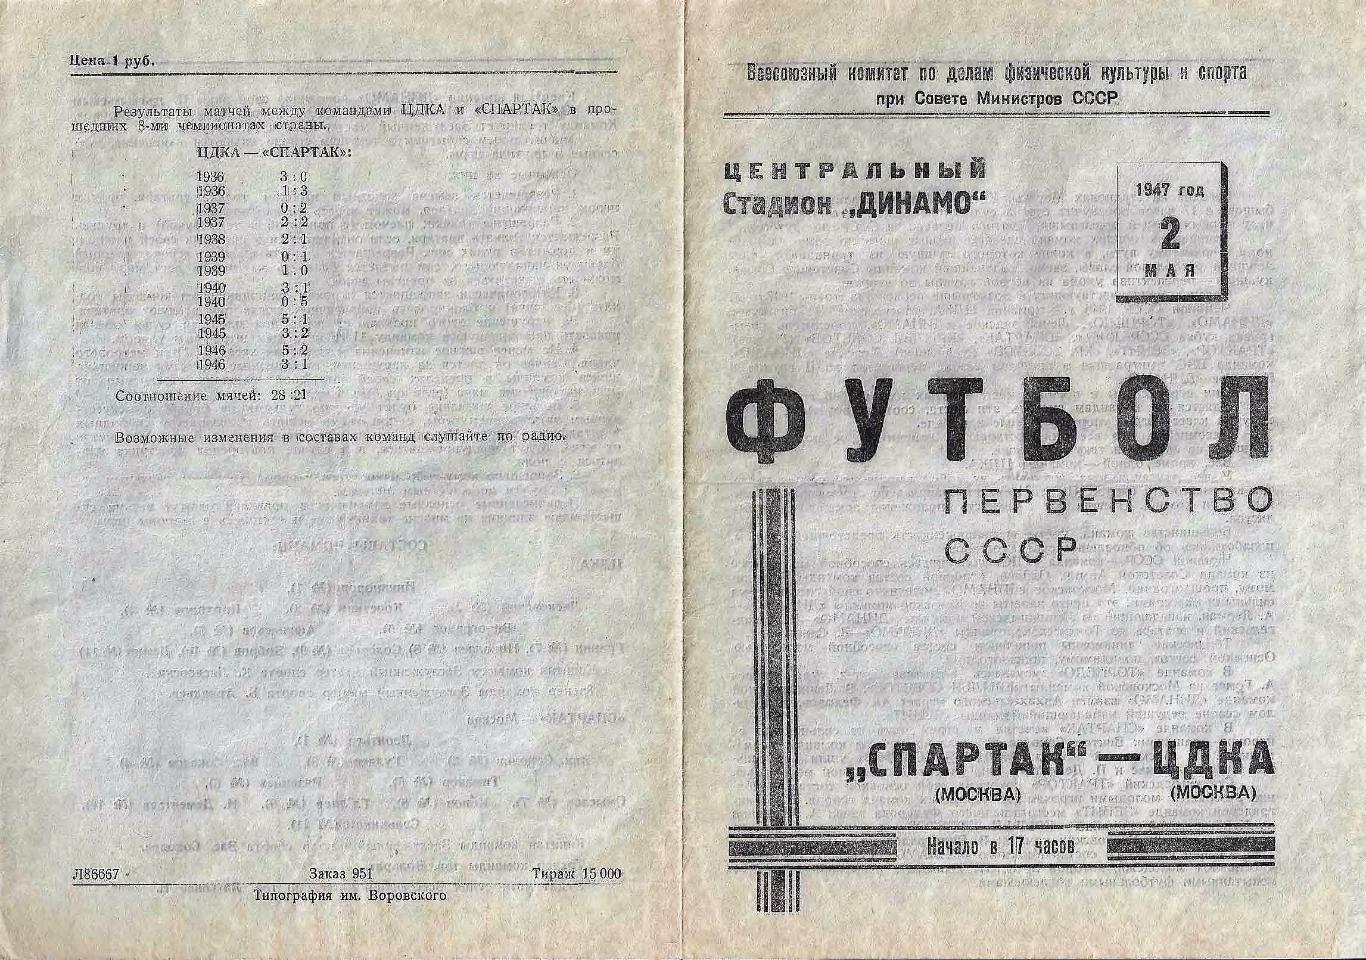 02.05.1947. ЦДКА (Москва) - Спартак (Москва) - копия